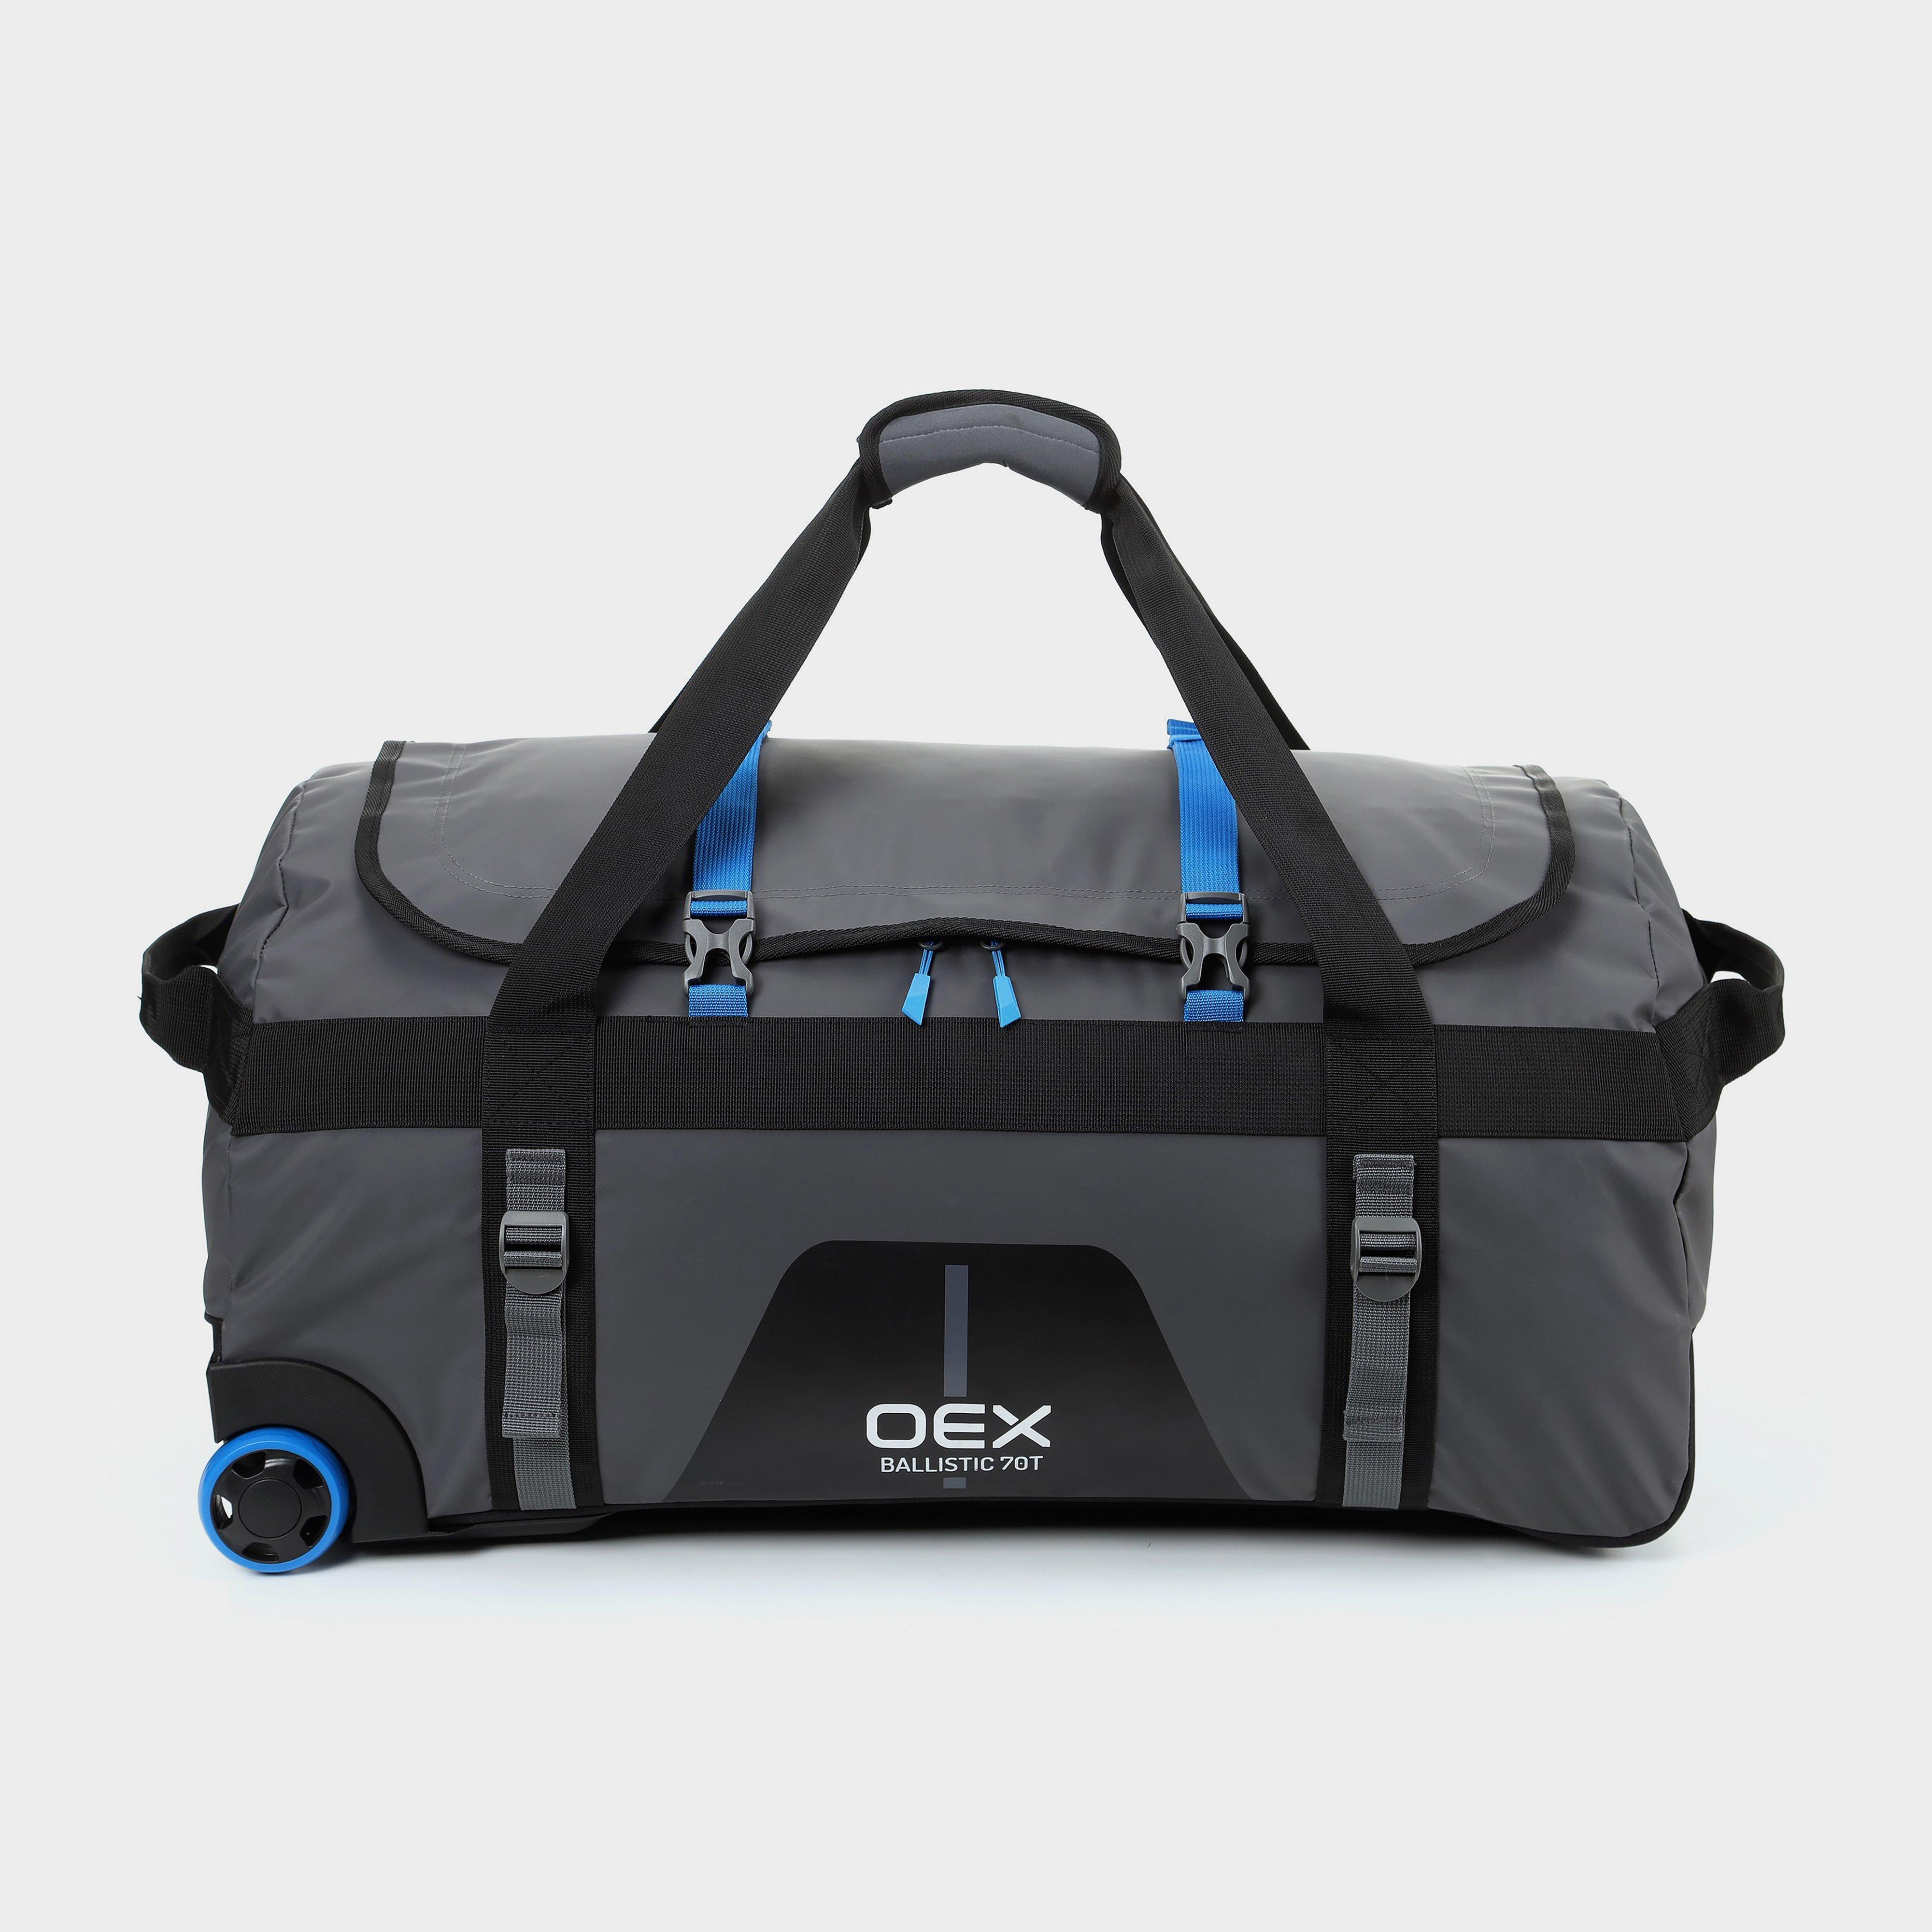 OEX Oex Ballistic 70T Travel Bag - Grey, Grey